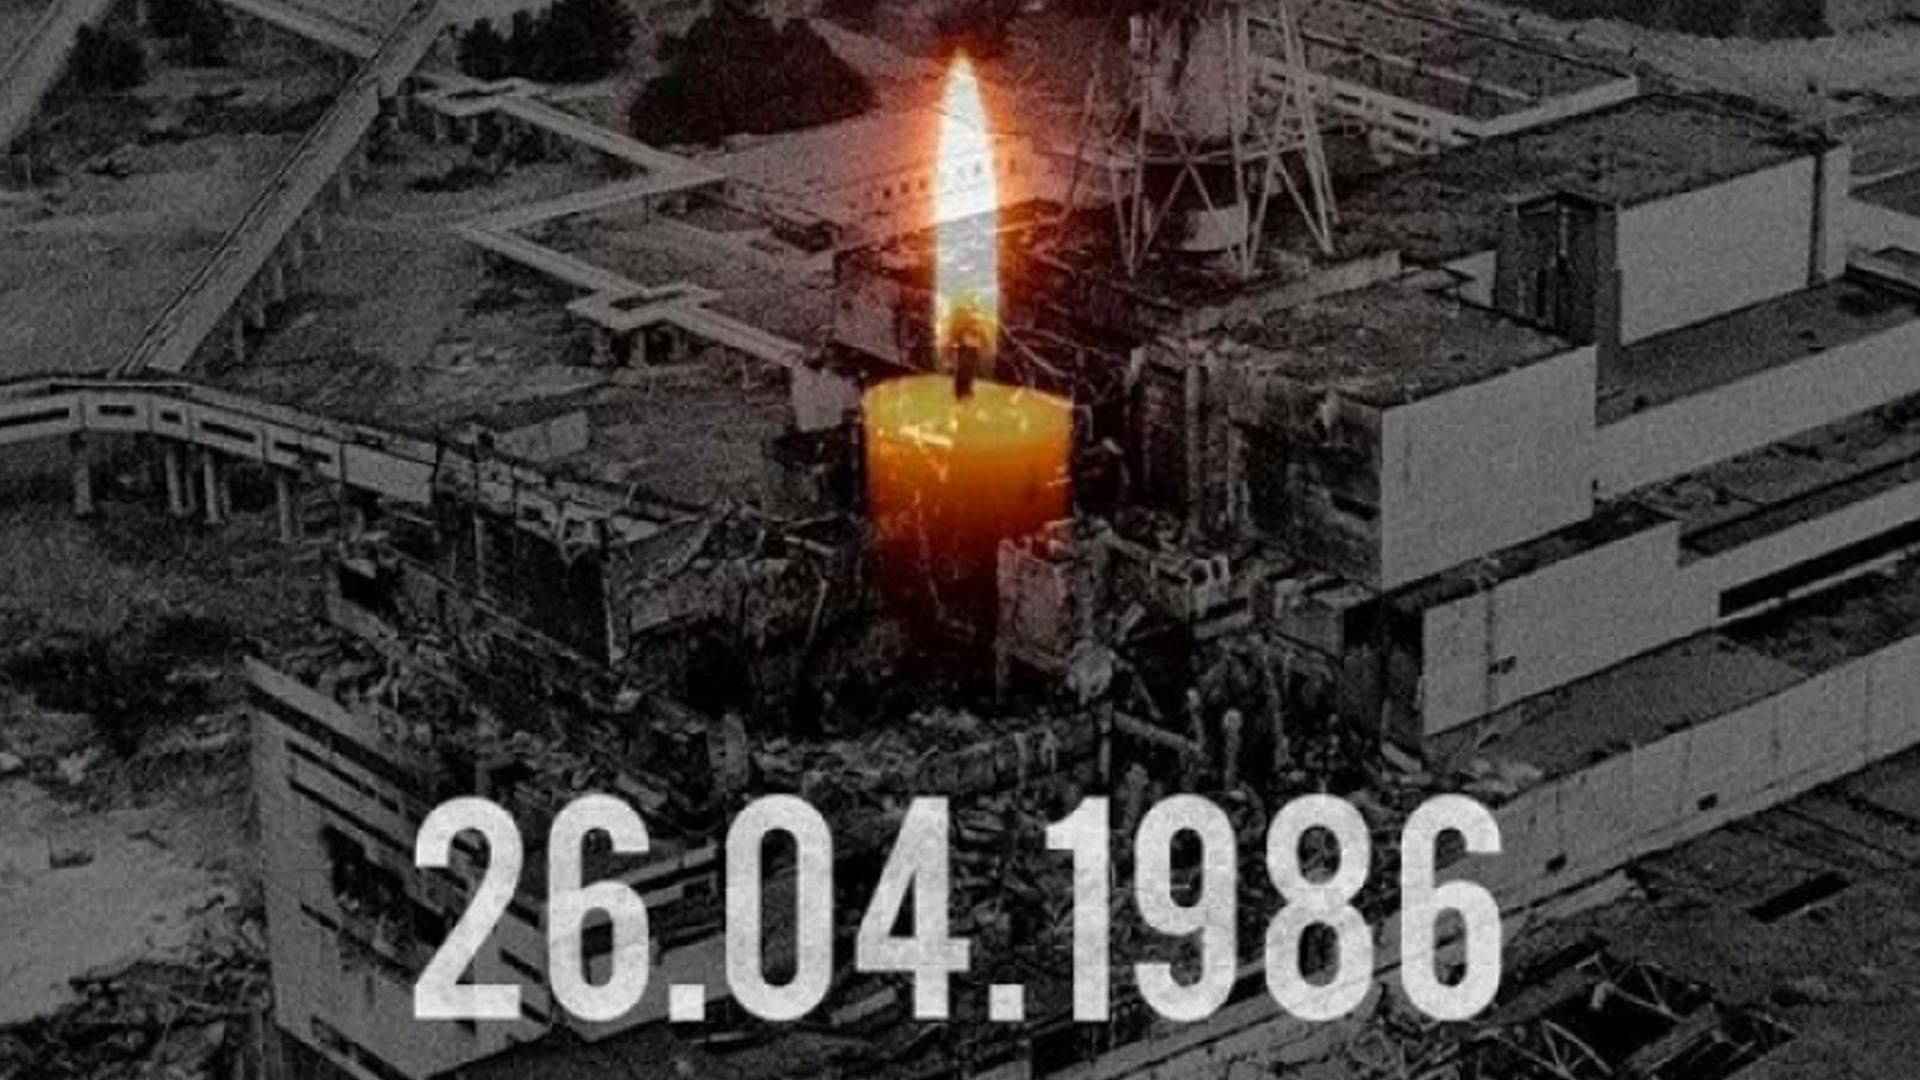 Чернобыльская катастрофа: как украинцы чтят память жертв трагедии на ЧАЭС – фото и видео